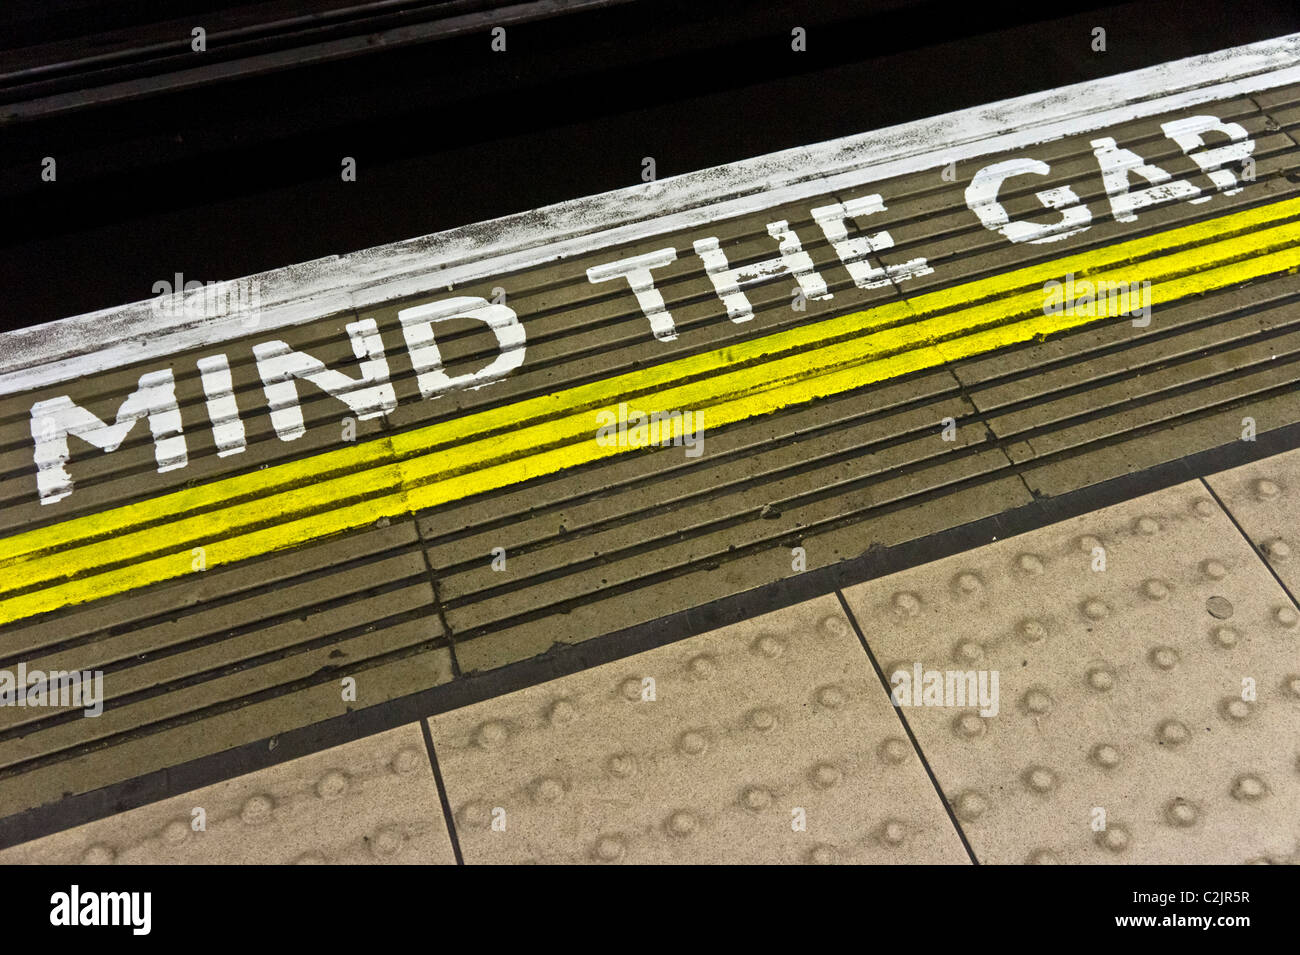 L'esprit de l'écart d'alerte sur le bord d'une plate-forme de la station de métro de Londres, Londres, Angleterre Banque D'Images